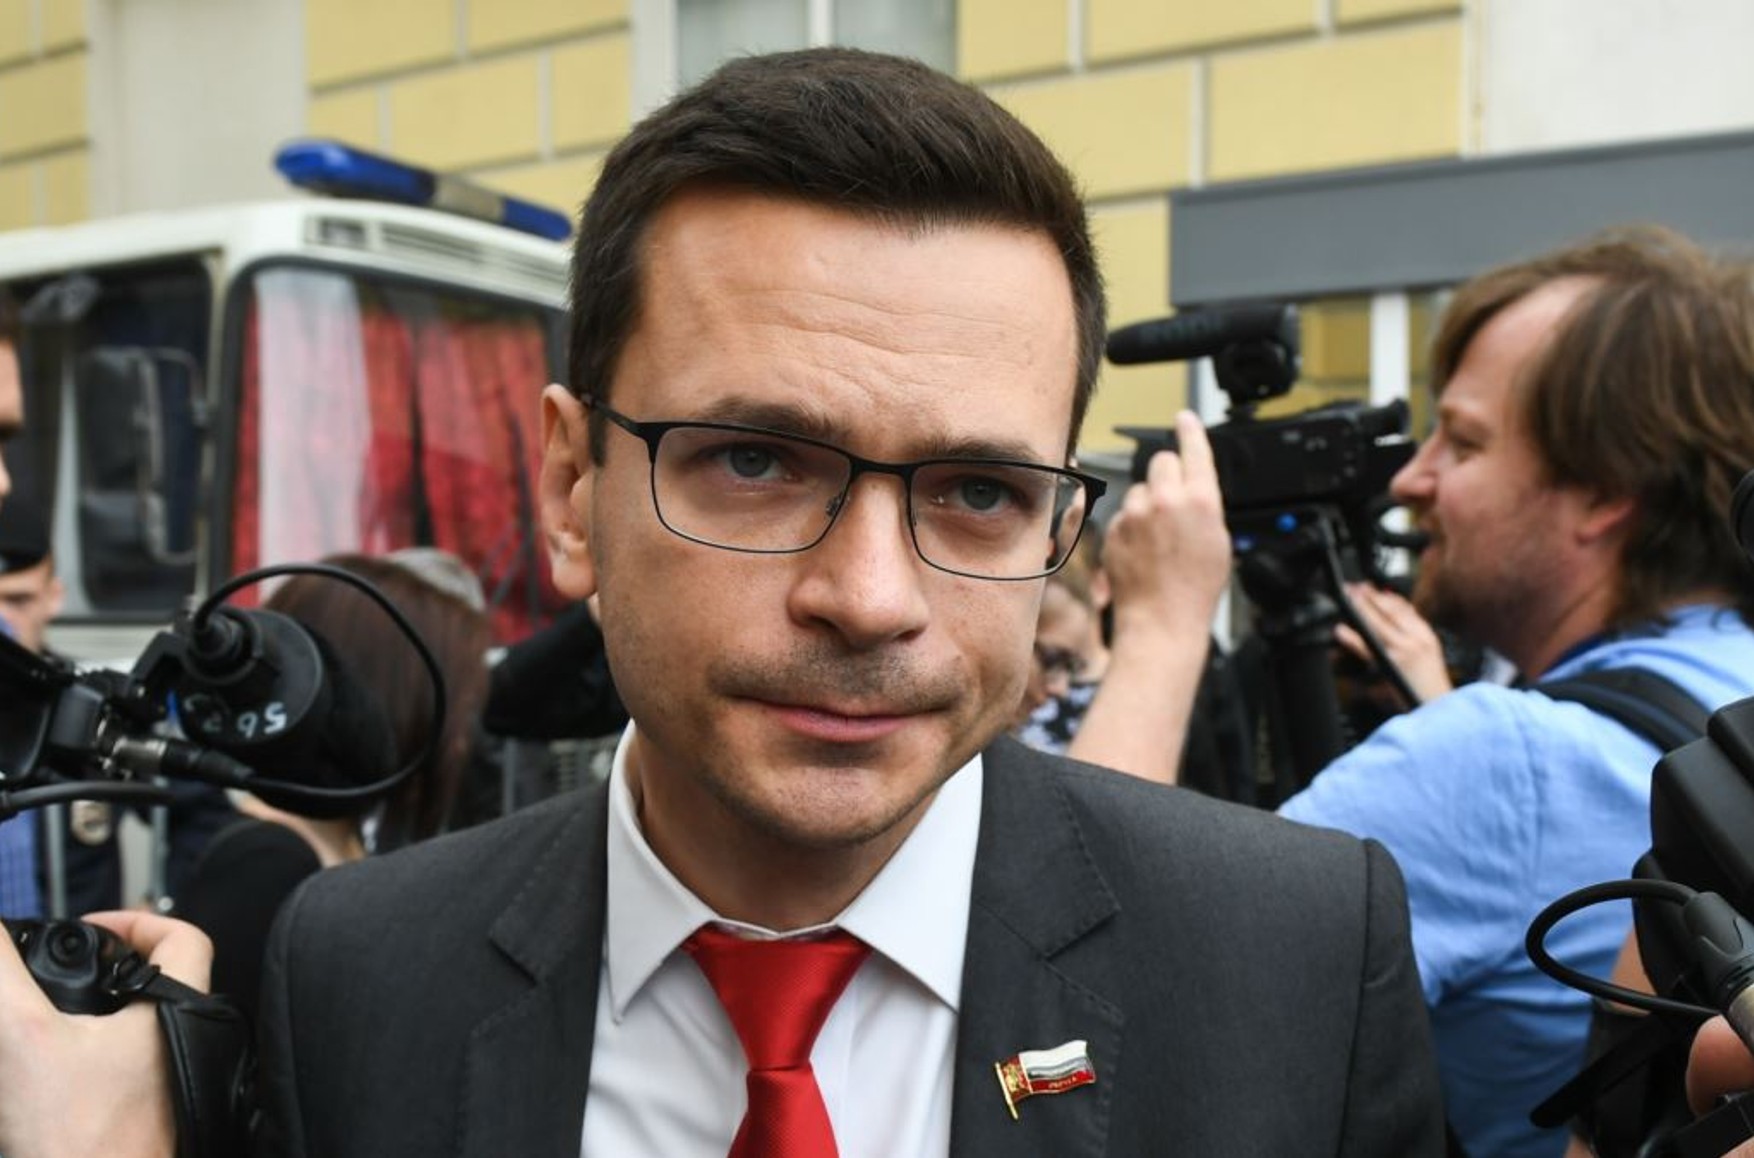 Ілля Яшин виграв суд у «кухаря Путіна» Євгена Пригожина у справі про наклеп в РІА ФАН